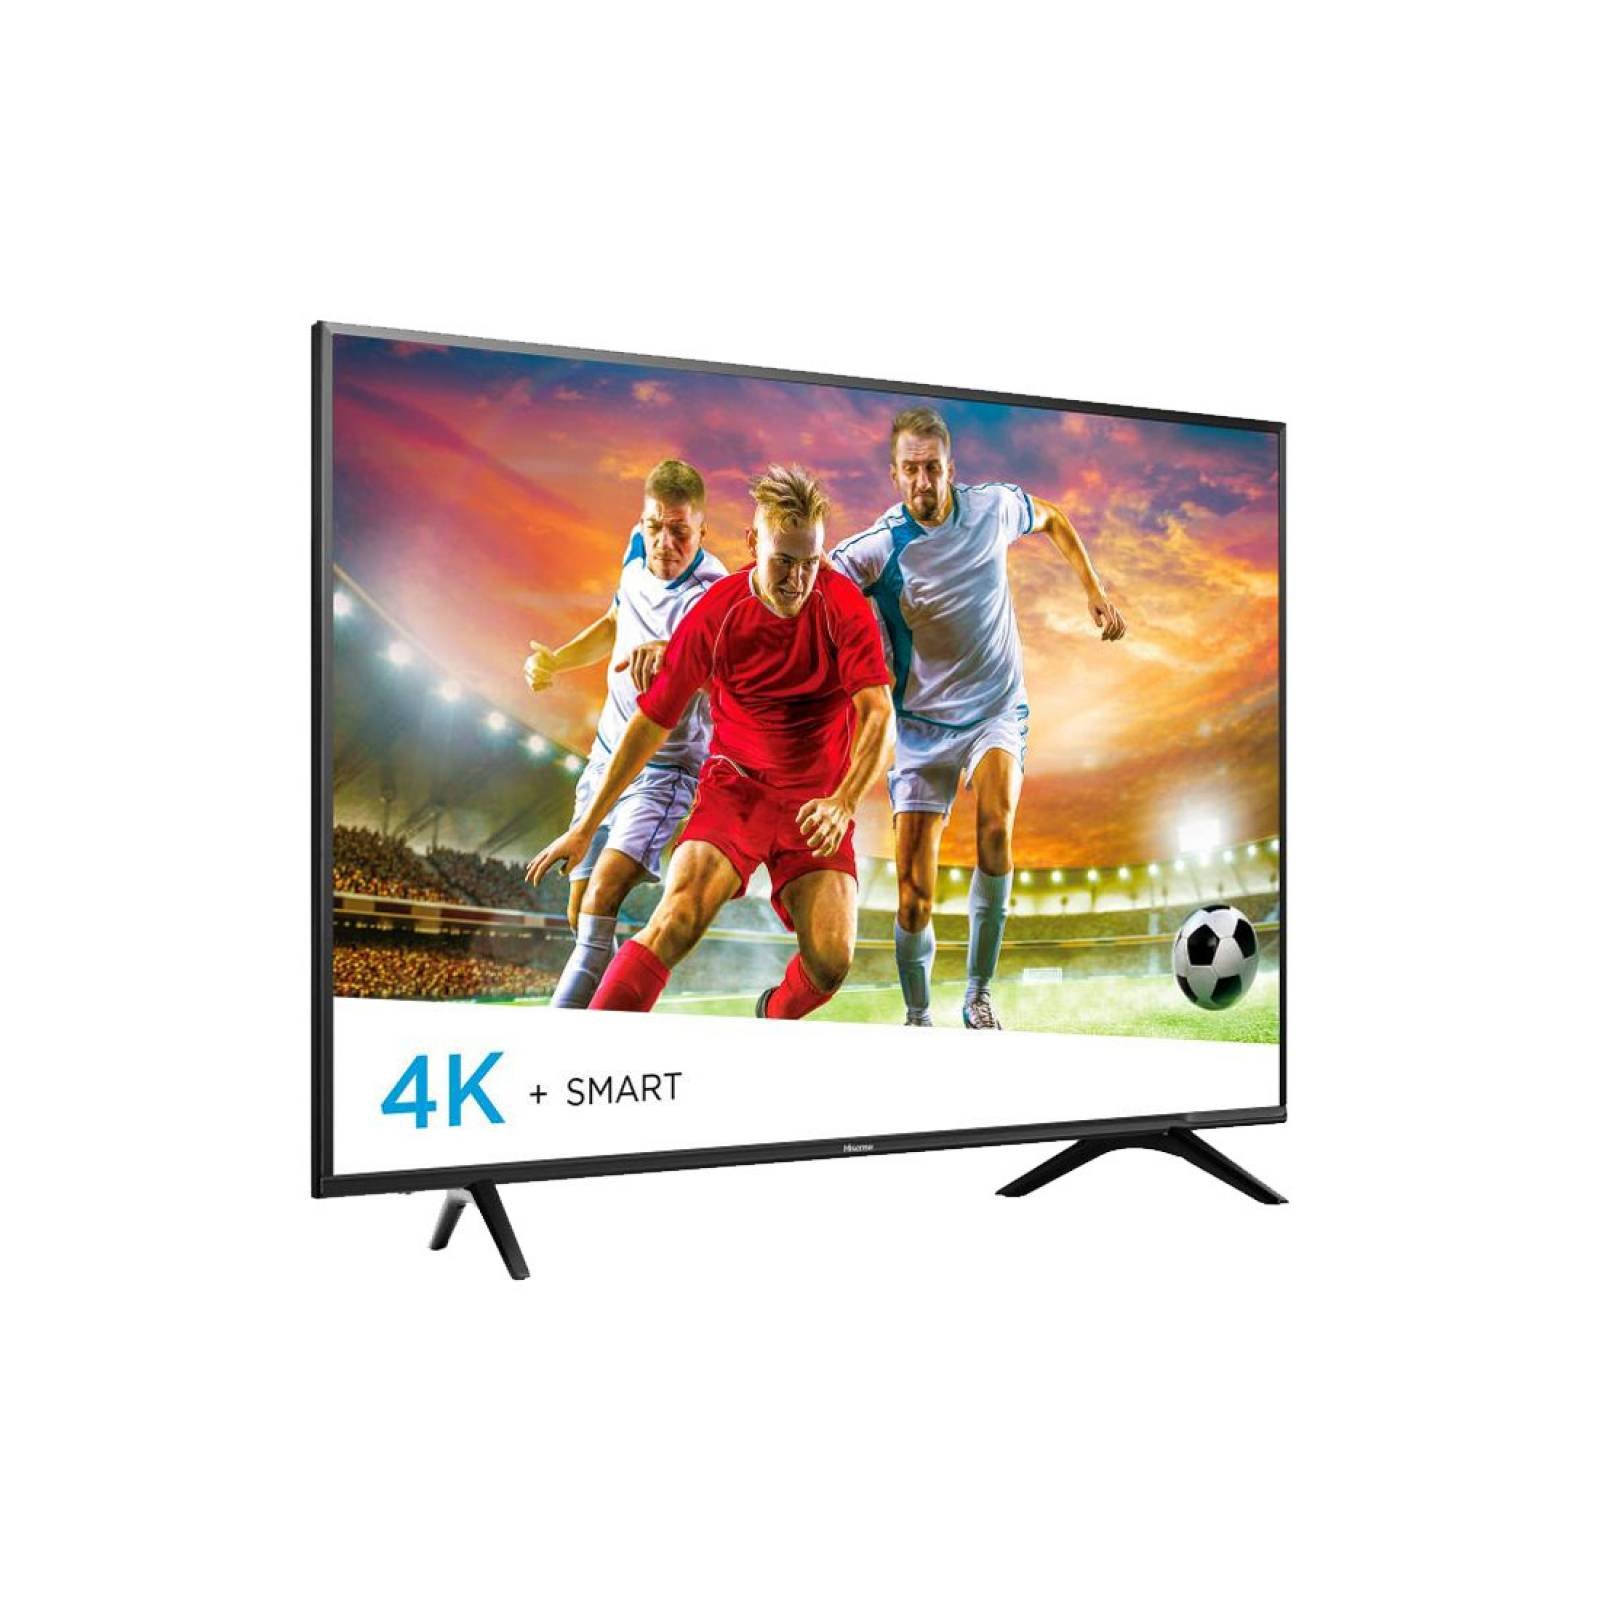 TV HISENSE 60 LED 4K 3840 X 2160P SMART TV